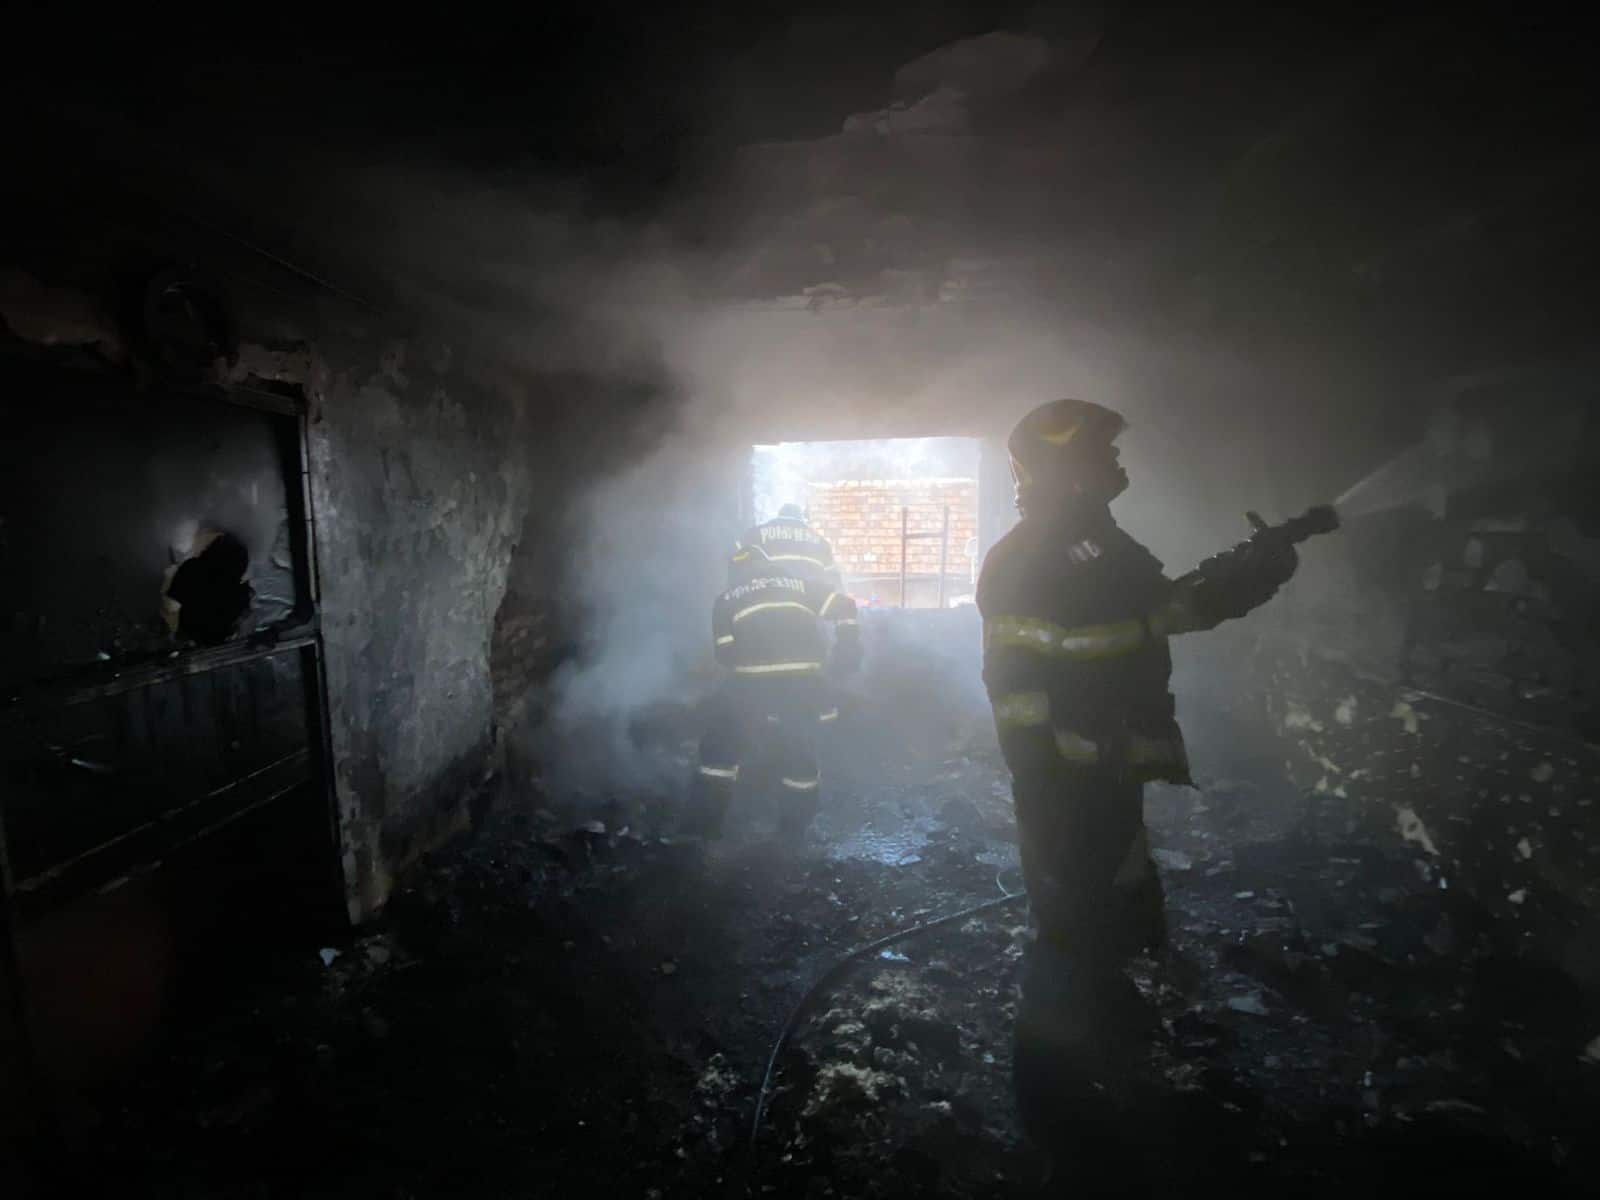 incendiu în axente sever - a luat foc o casă